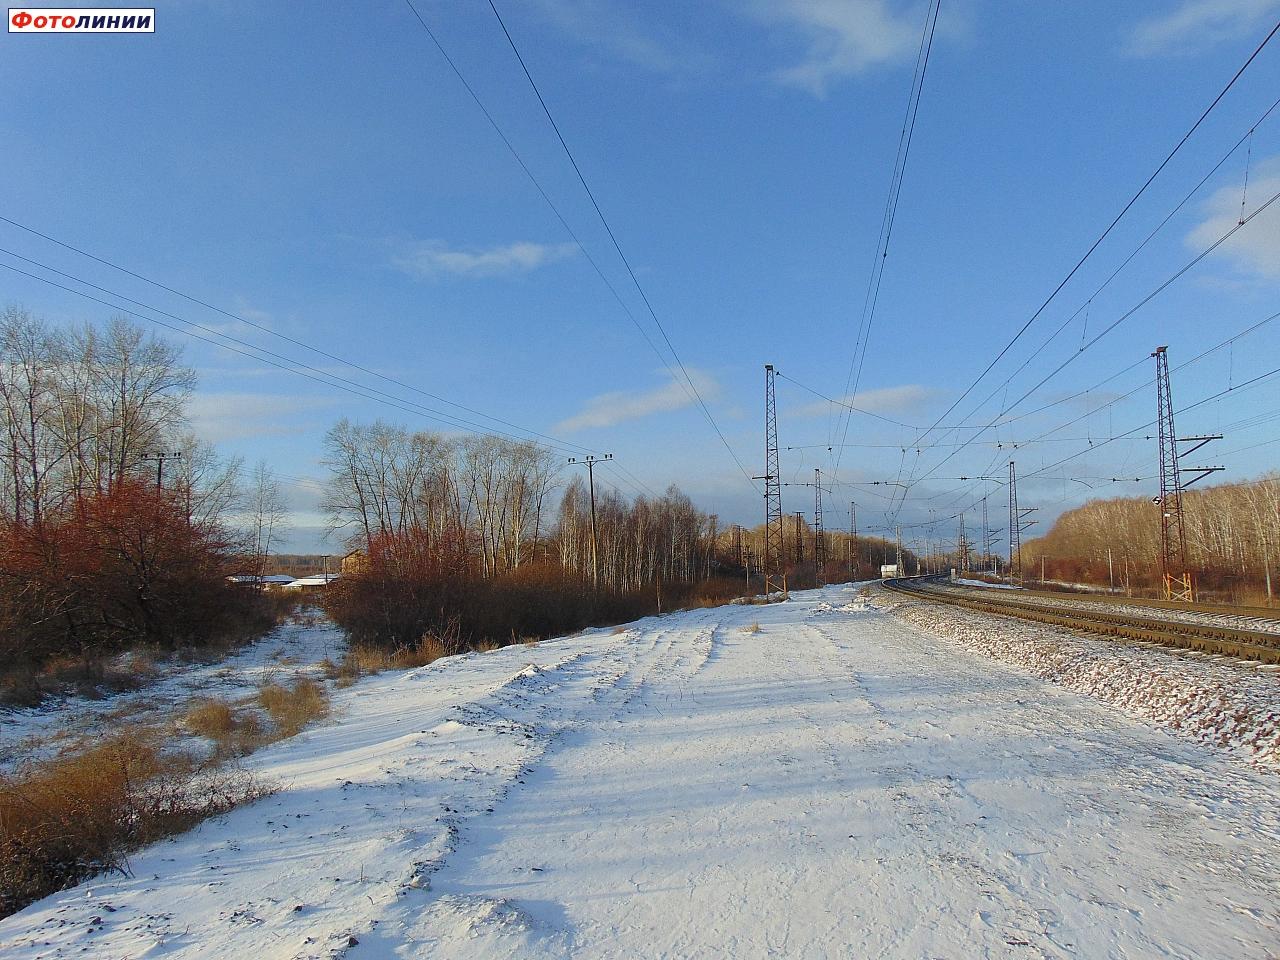 Чётная горловина станции, вид в сторону станции Бишкиль. Влево отходит насыпь разобранного подъездного пути к тяговой подстанции